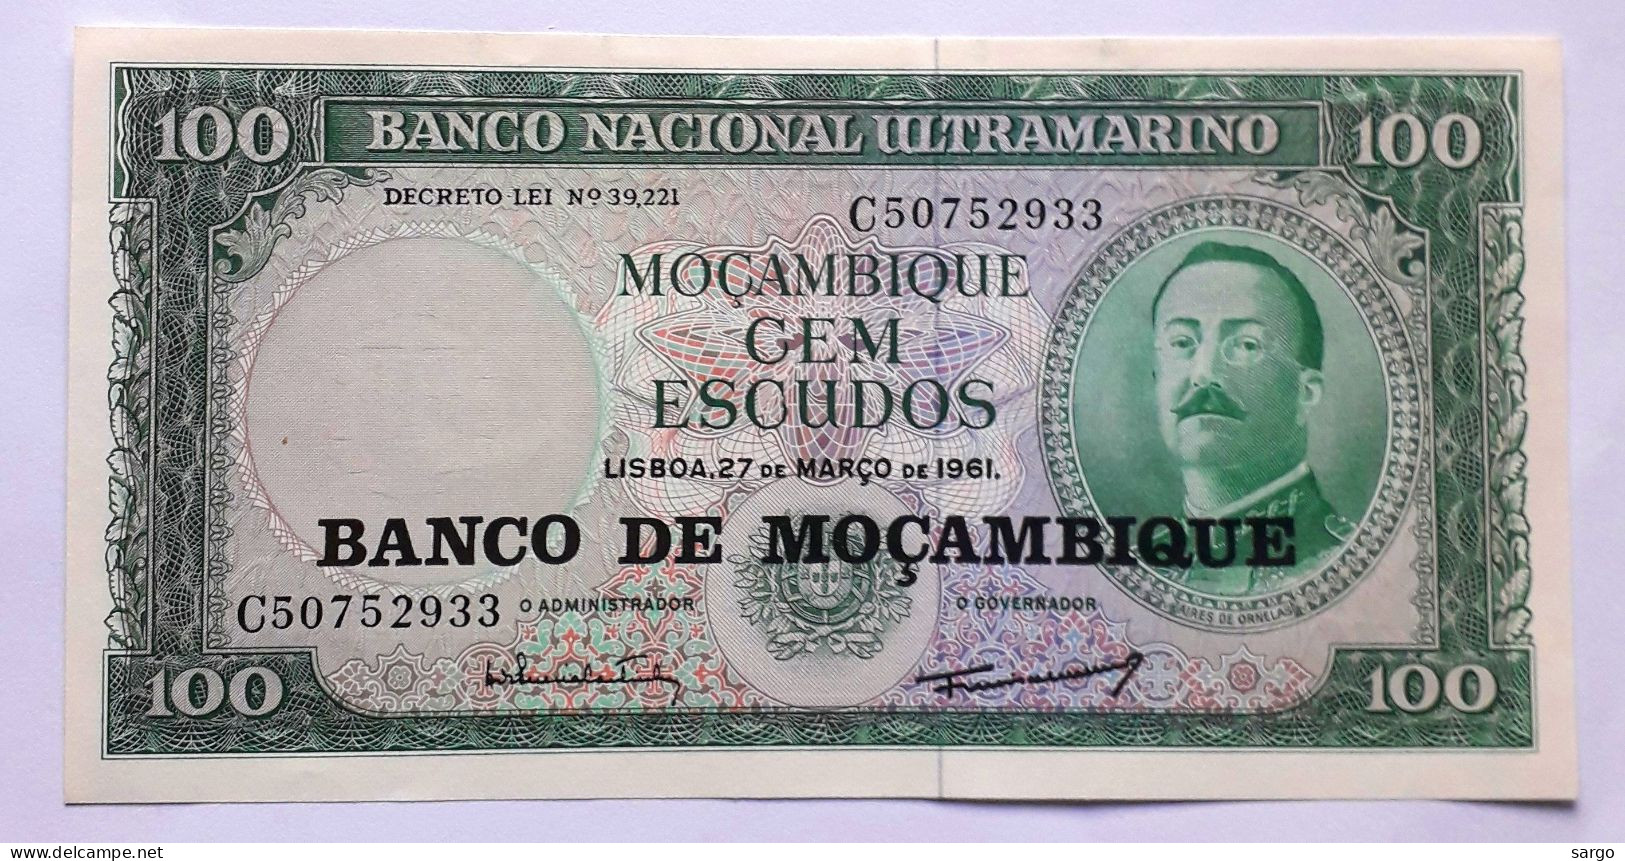 MOZAMBIQUE - 100 ESCUDOS - P 117  (1976)  - UNC - BANKNOTES - PAPER MONEY - CARTAMONETA - - Mozambique